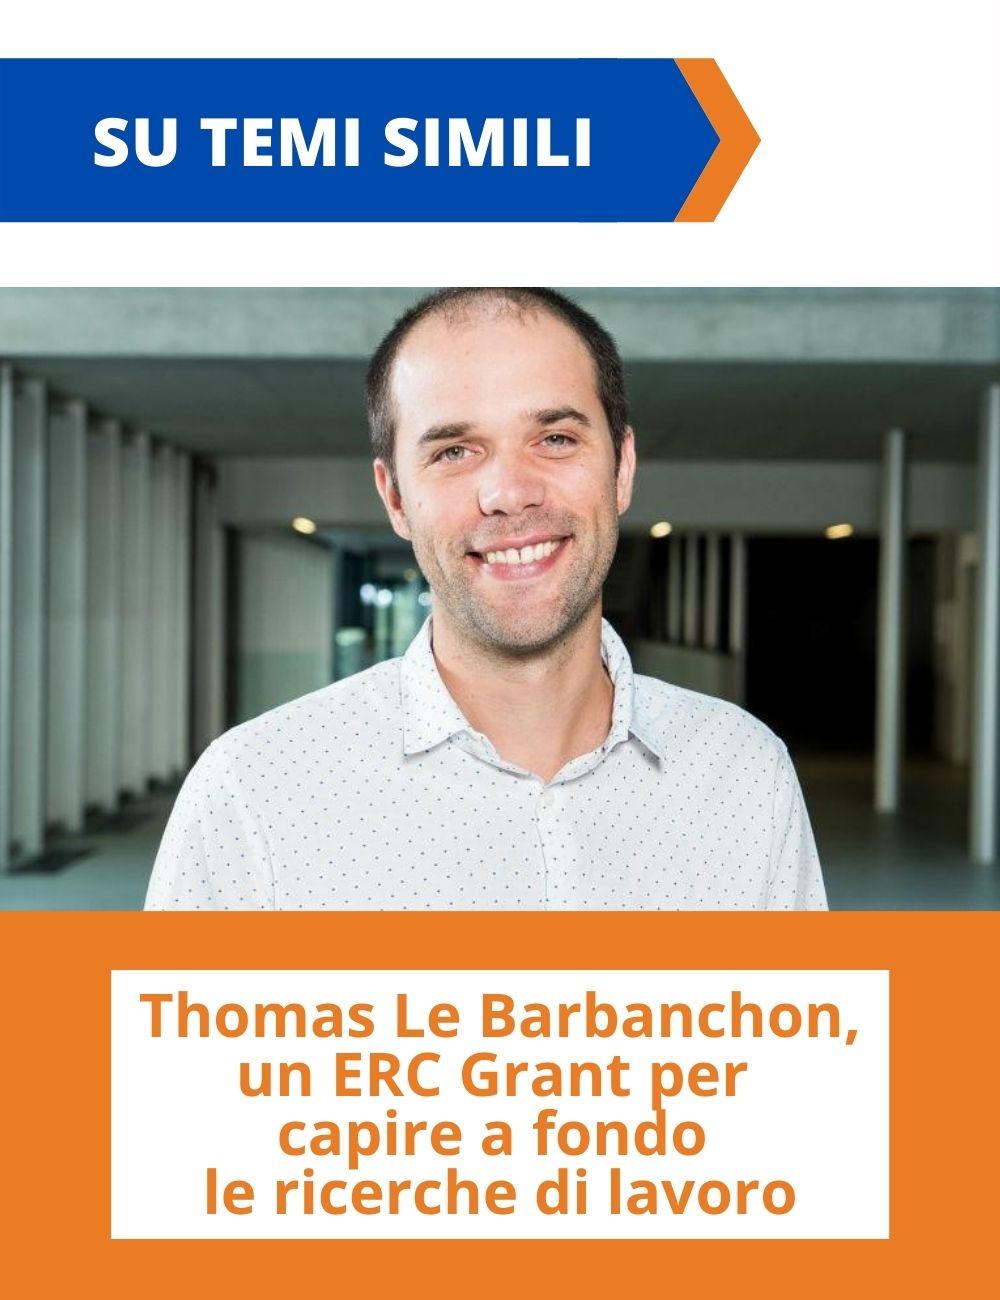 Immagine con link ad articoli con temi simili. Thomas Le Barbanchon sorridente rimanda all'articolo intitolato: Thomas Le Barbanchon, un ERC Grant per capire a fondo le ricerche di lavoro.